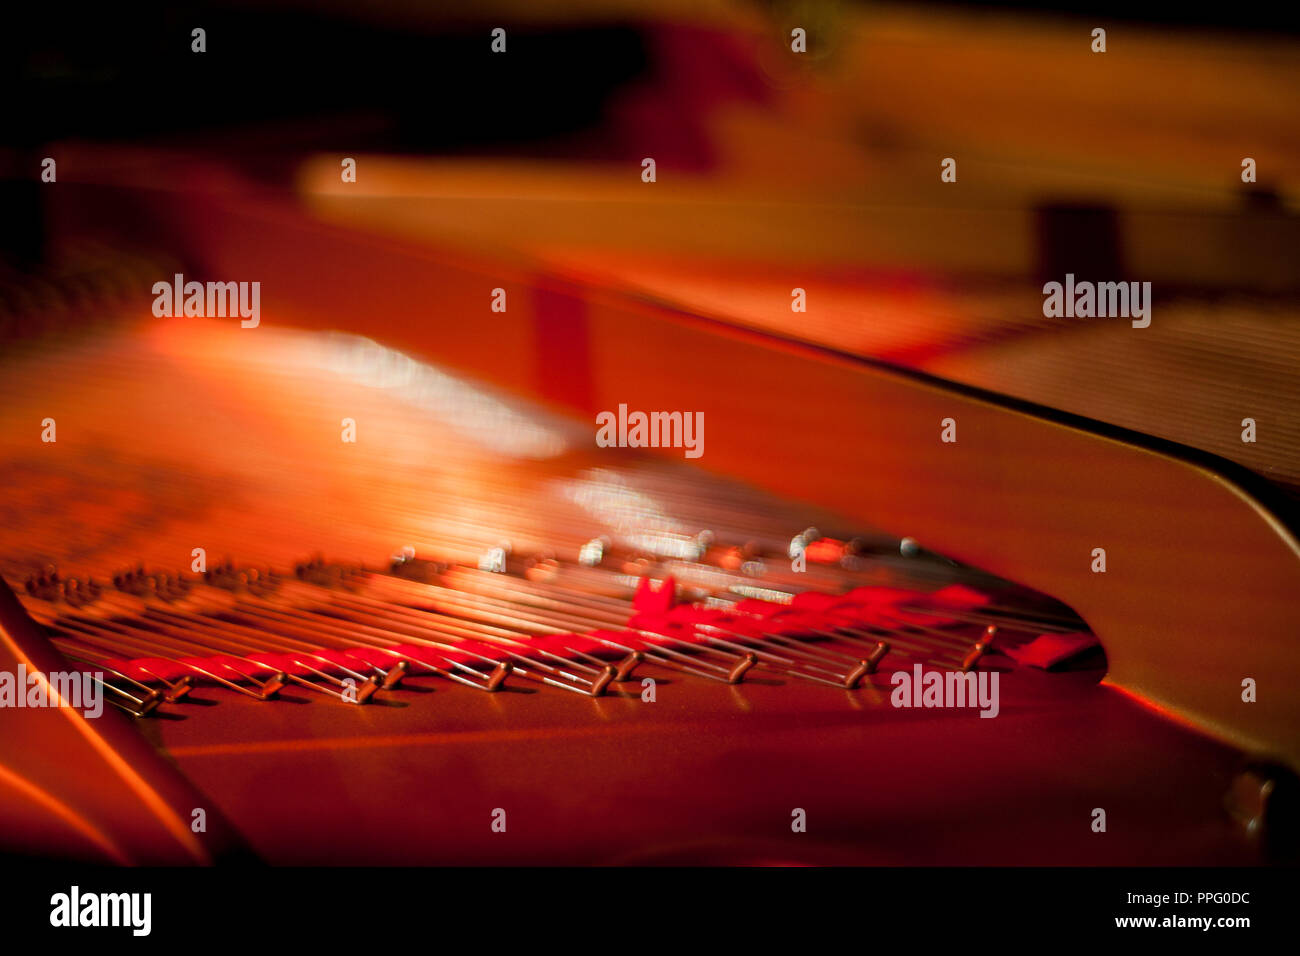 piano music Stock Photo